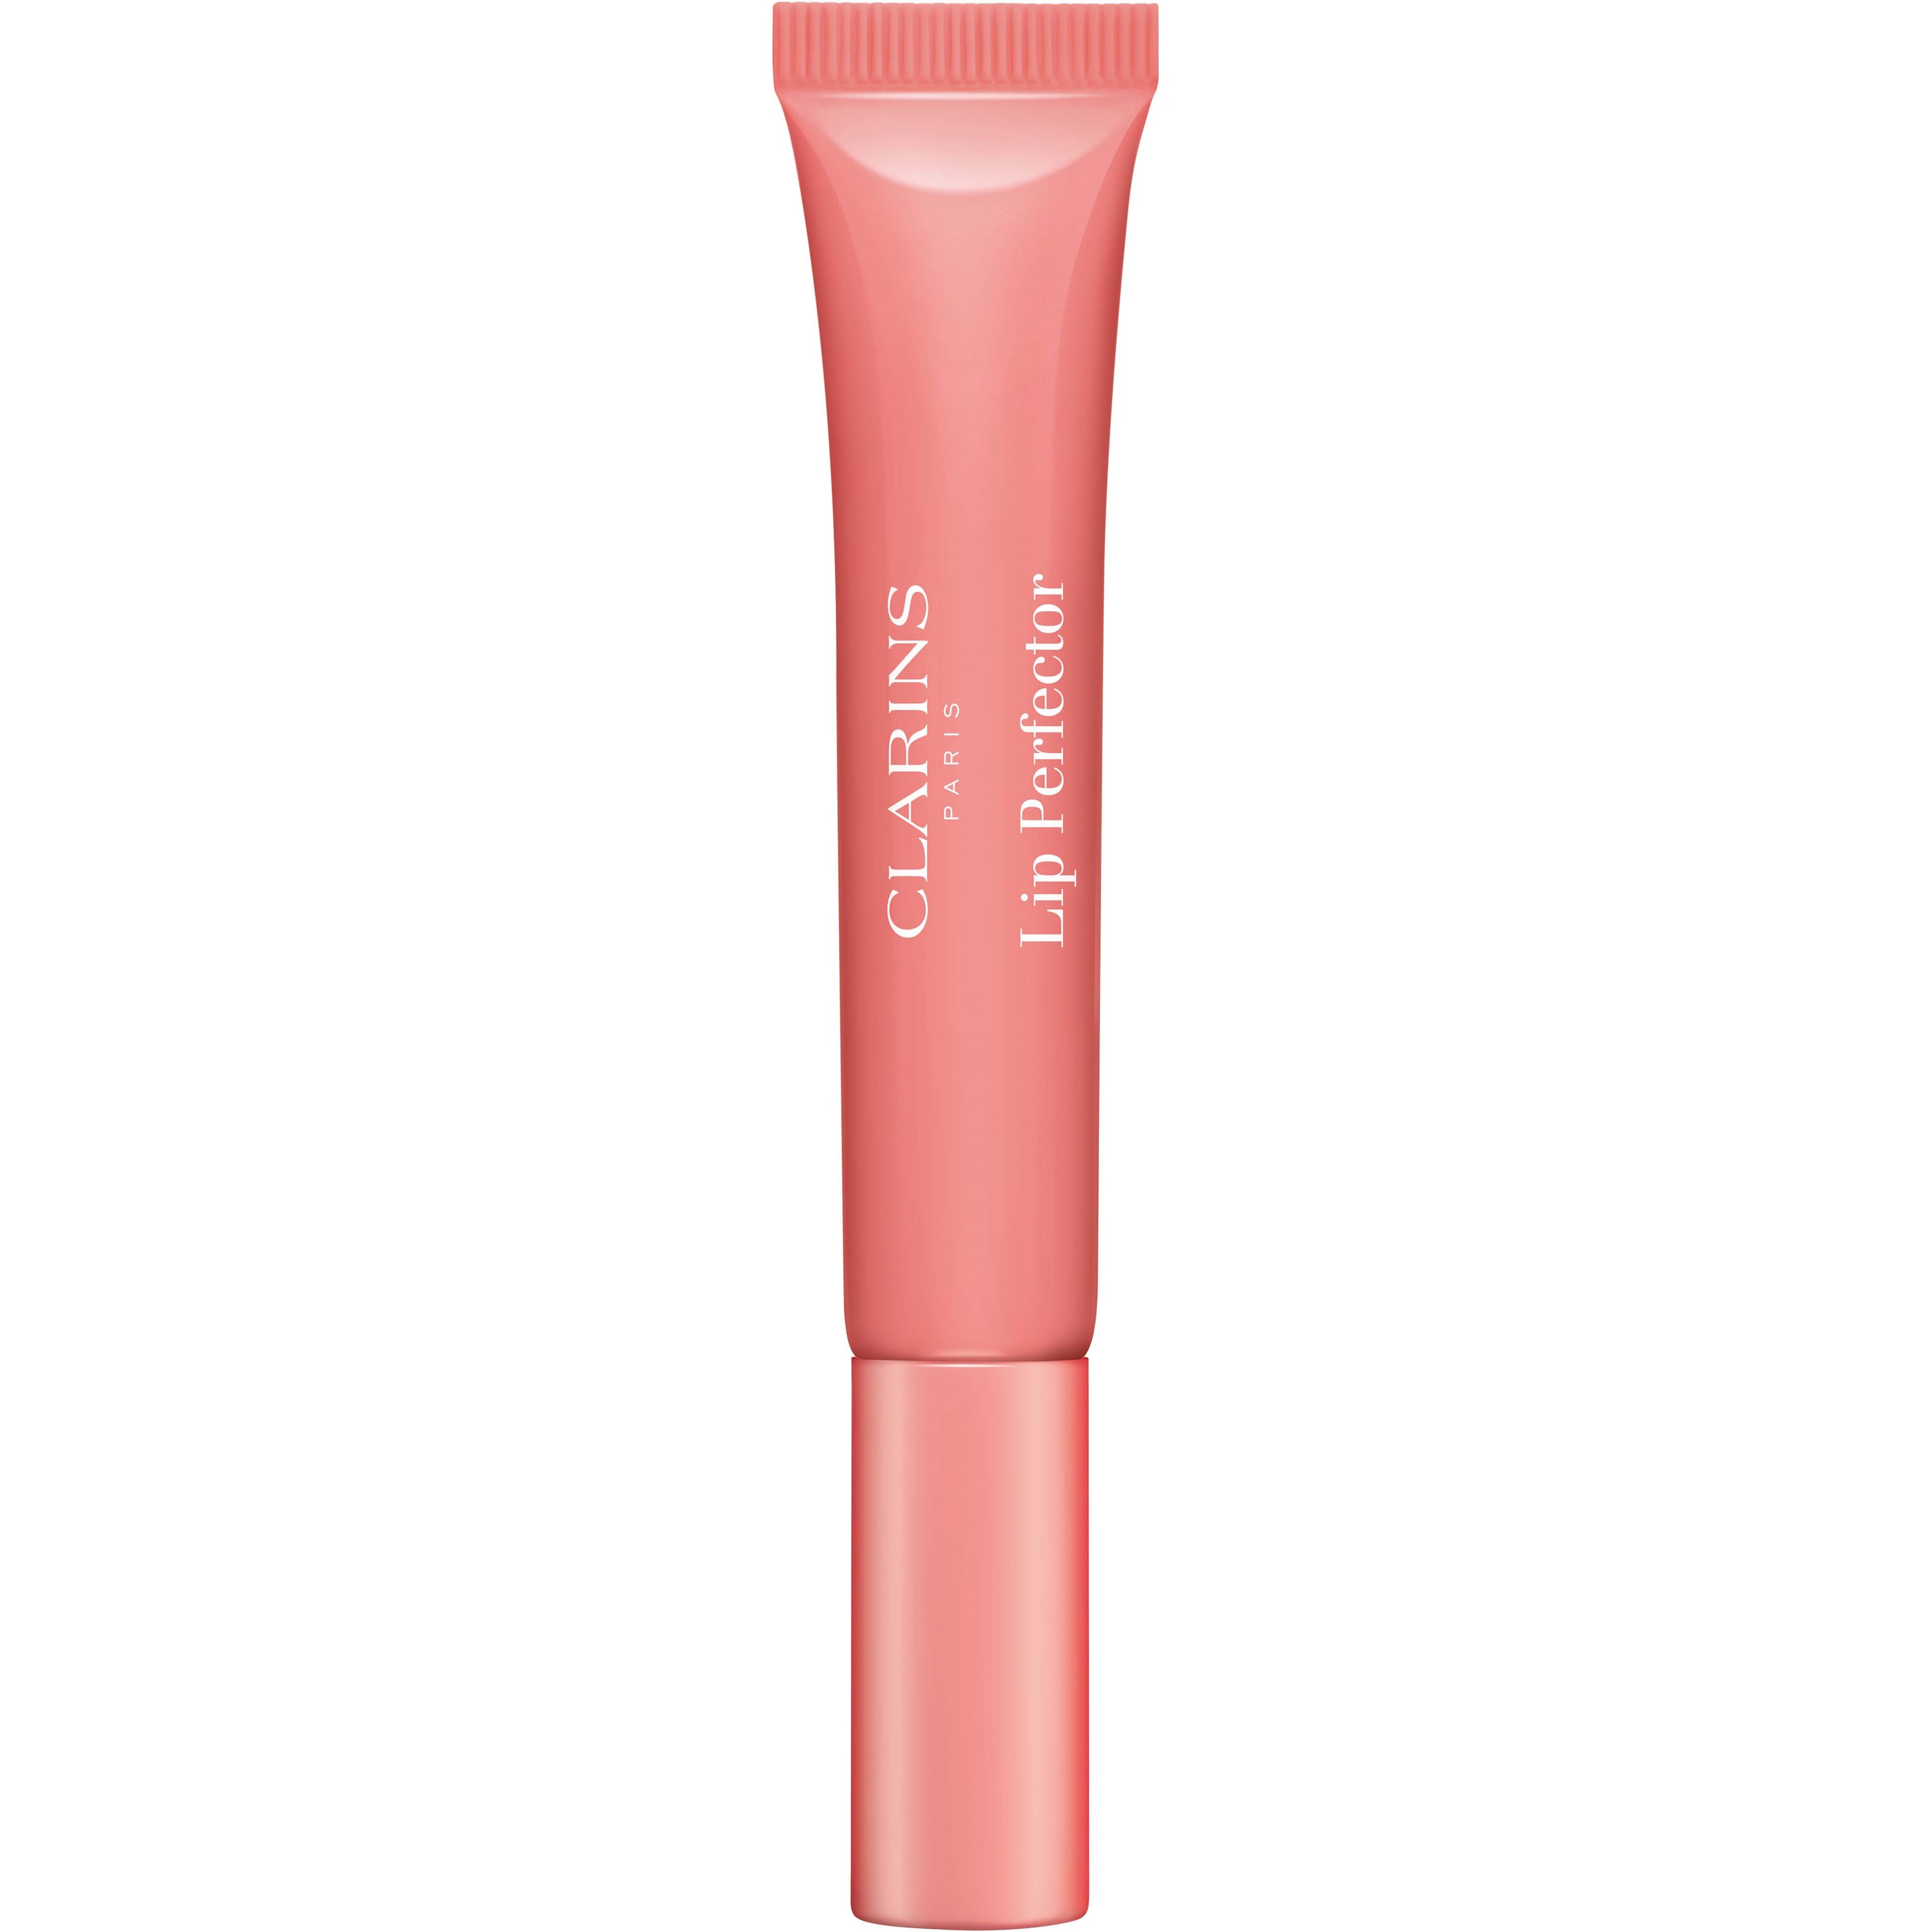 Bilde av Clarins Instant Light Natural Lip Perfector 05 Candy Shimmer